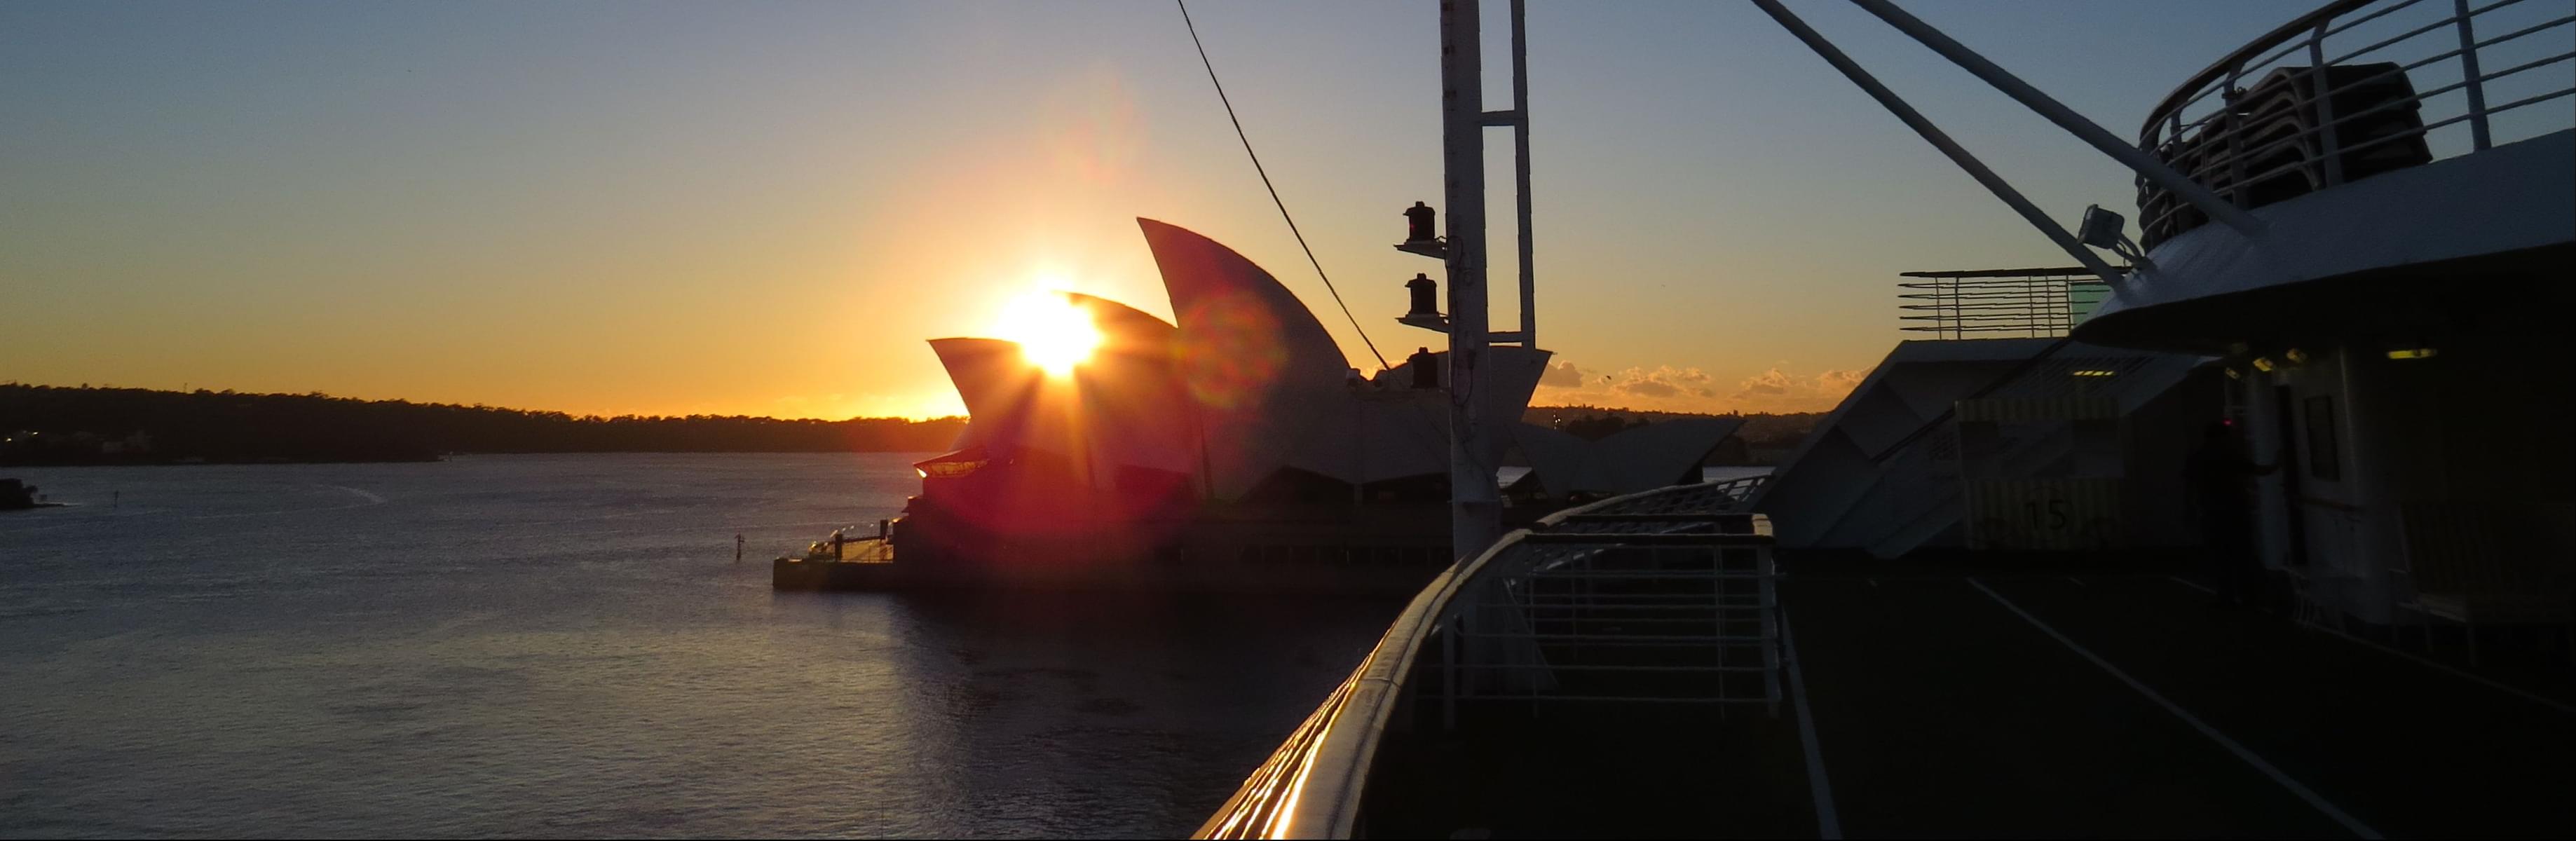 Sunrise Sailing In Sydney Harbour